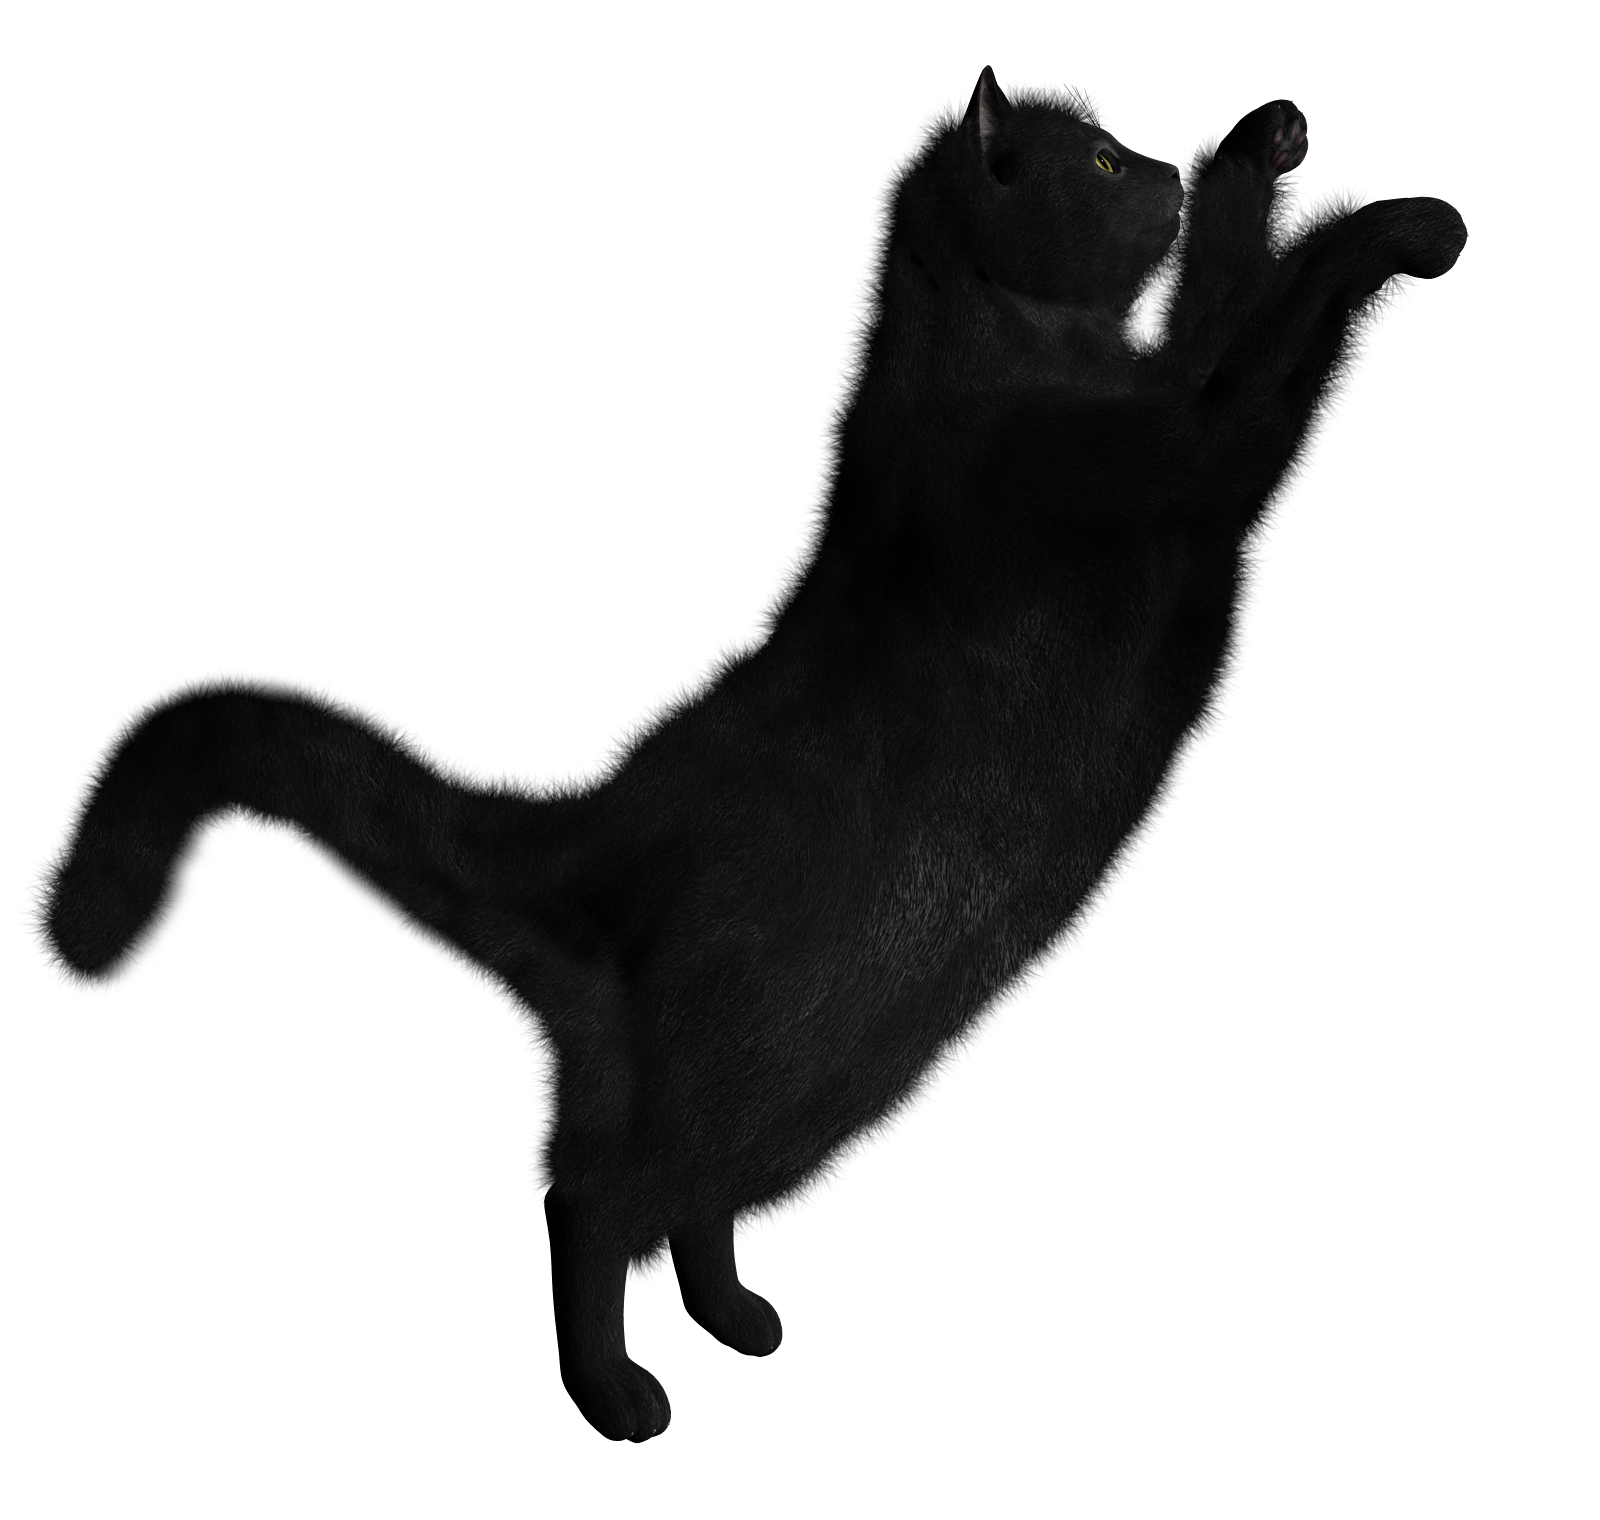 跳跃的黑猫PNG图片